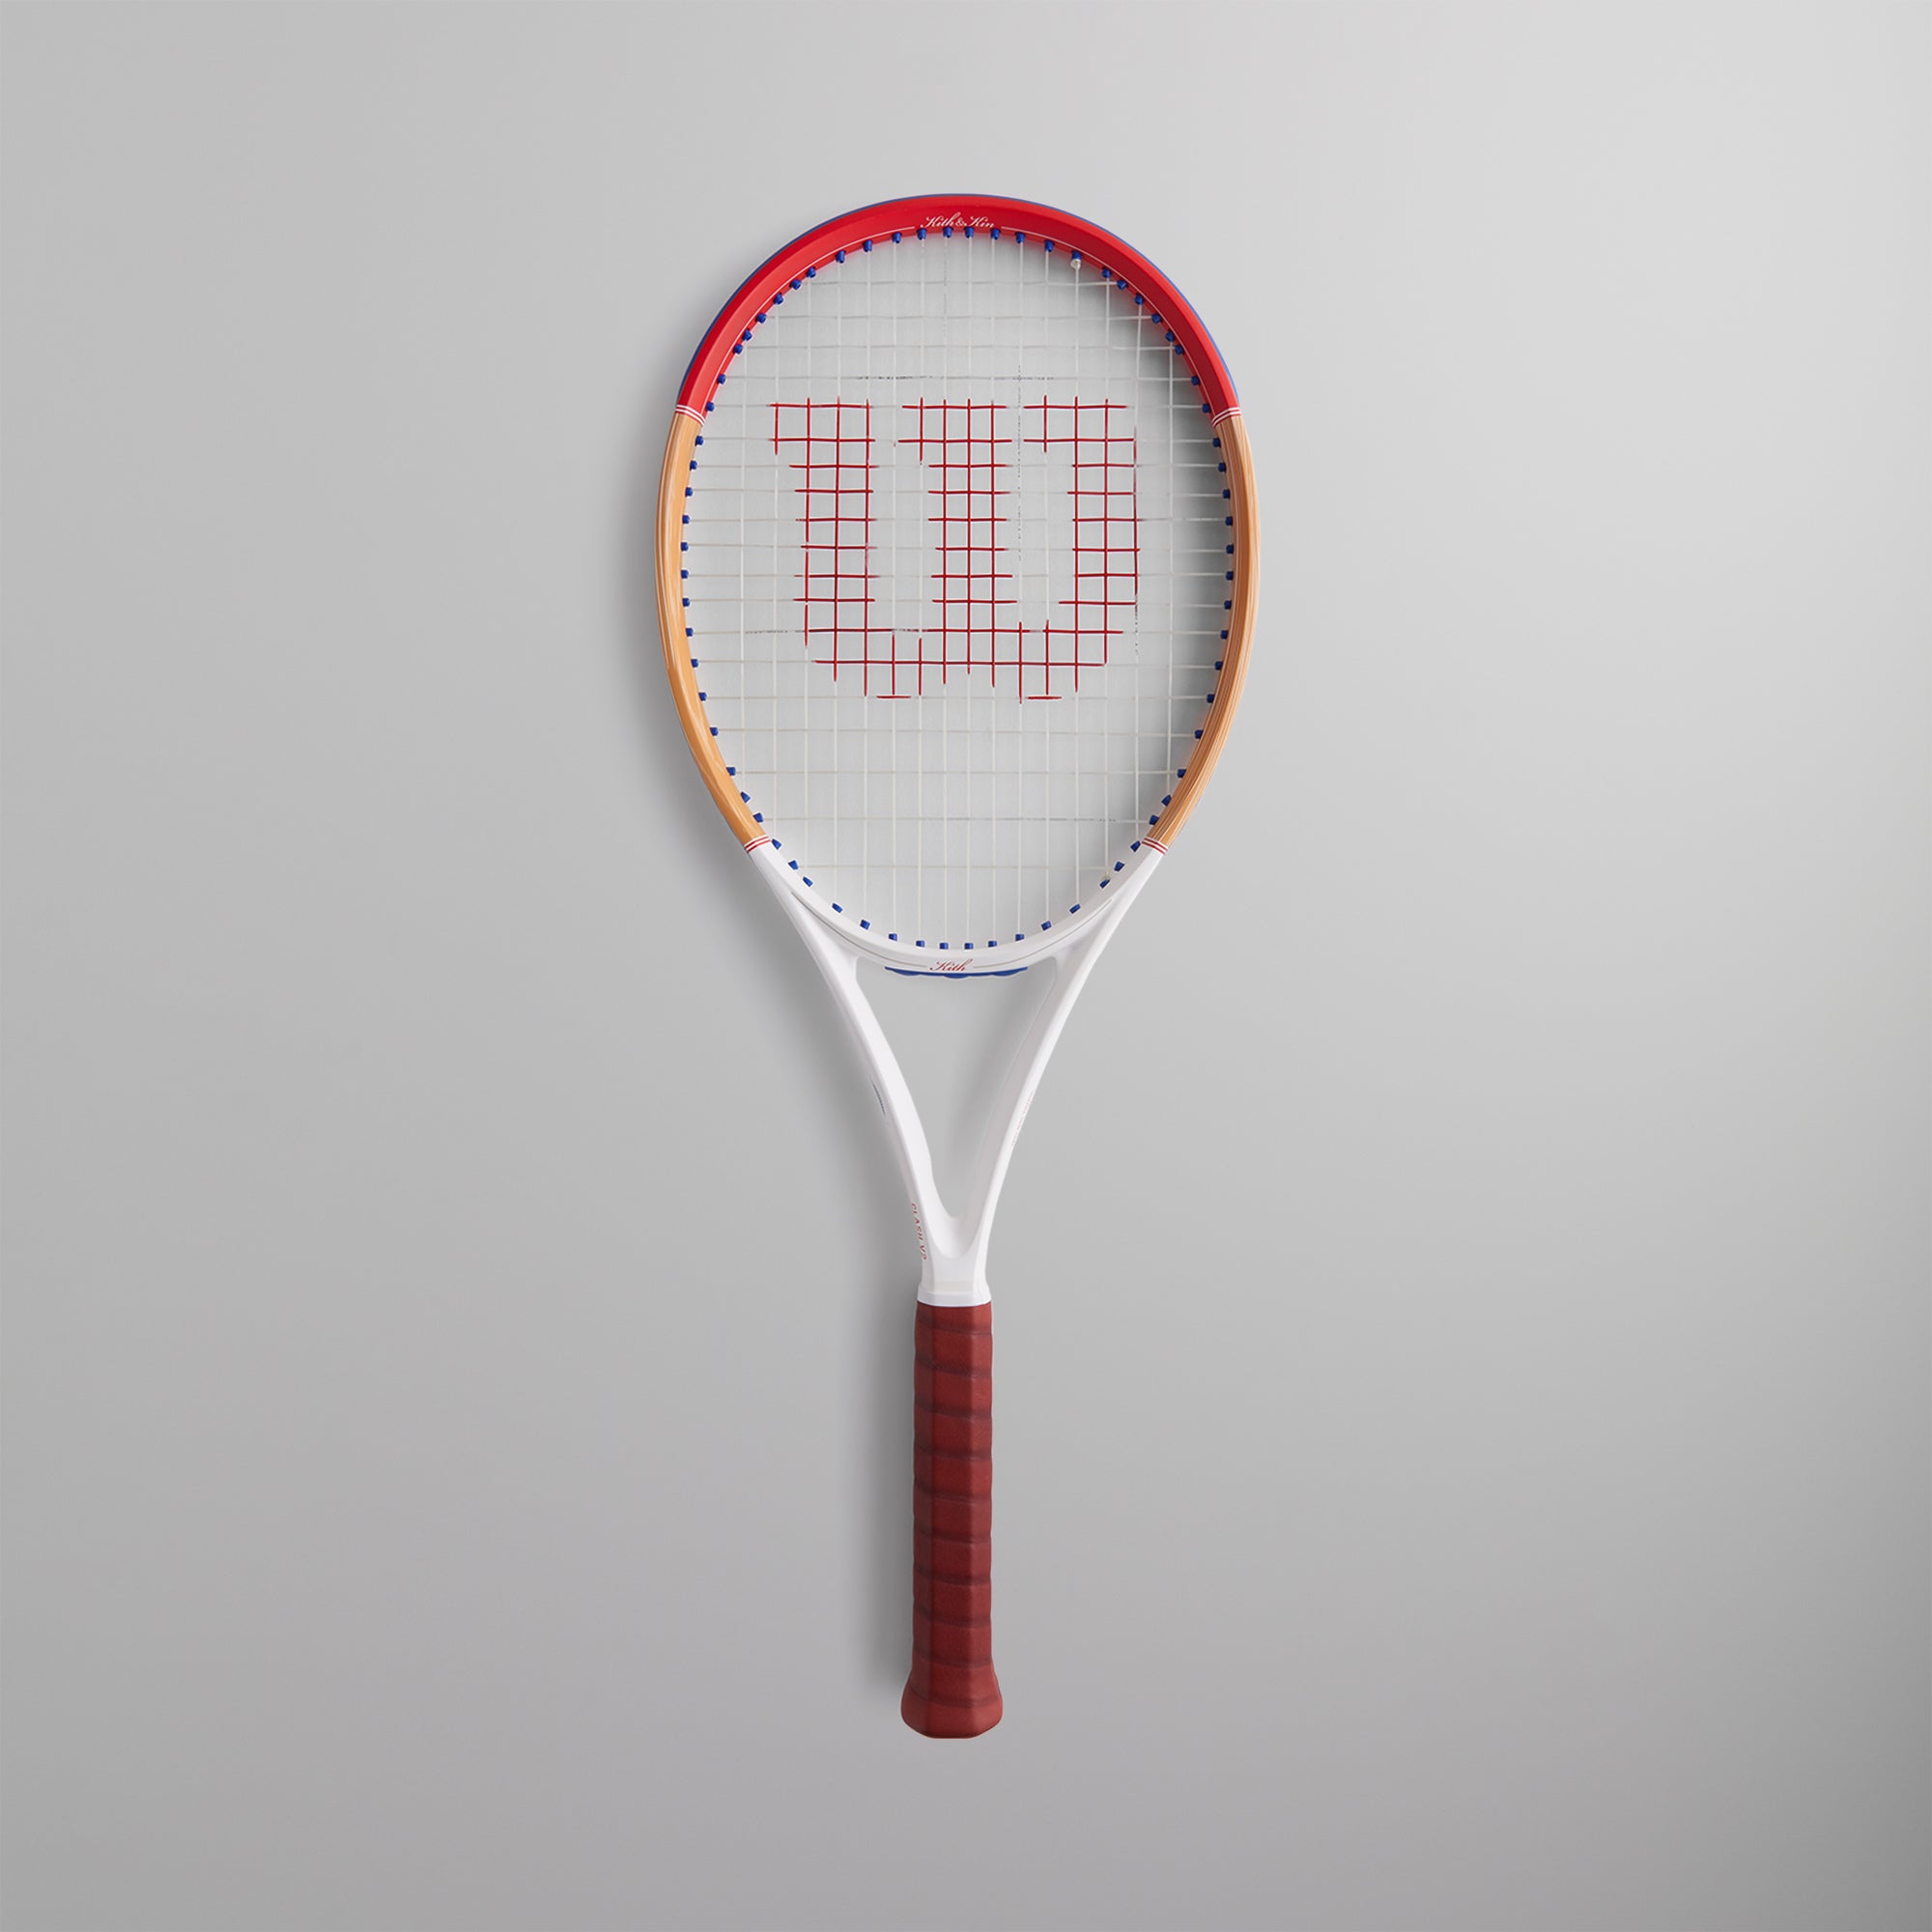 Kith for Wilson Tennis Racket Clash 